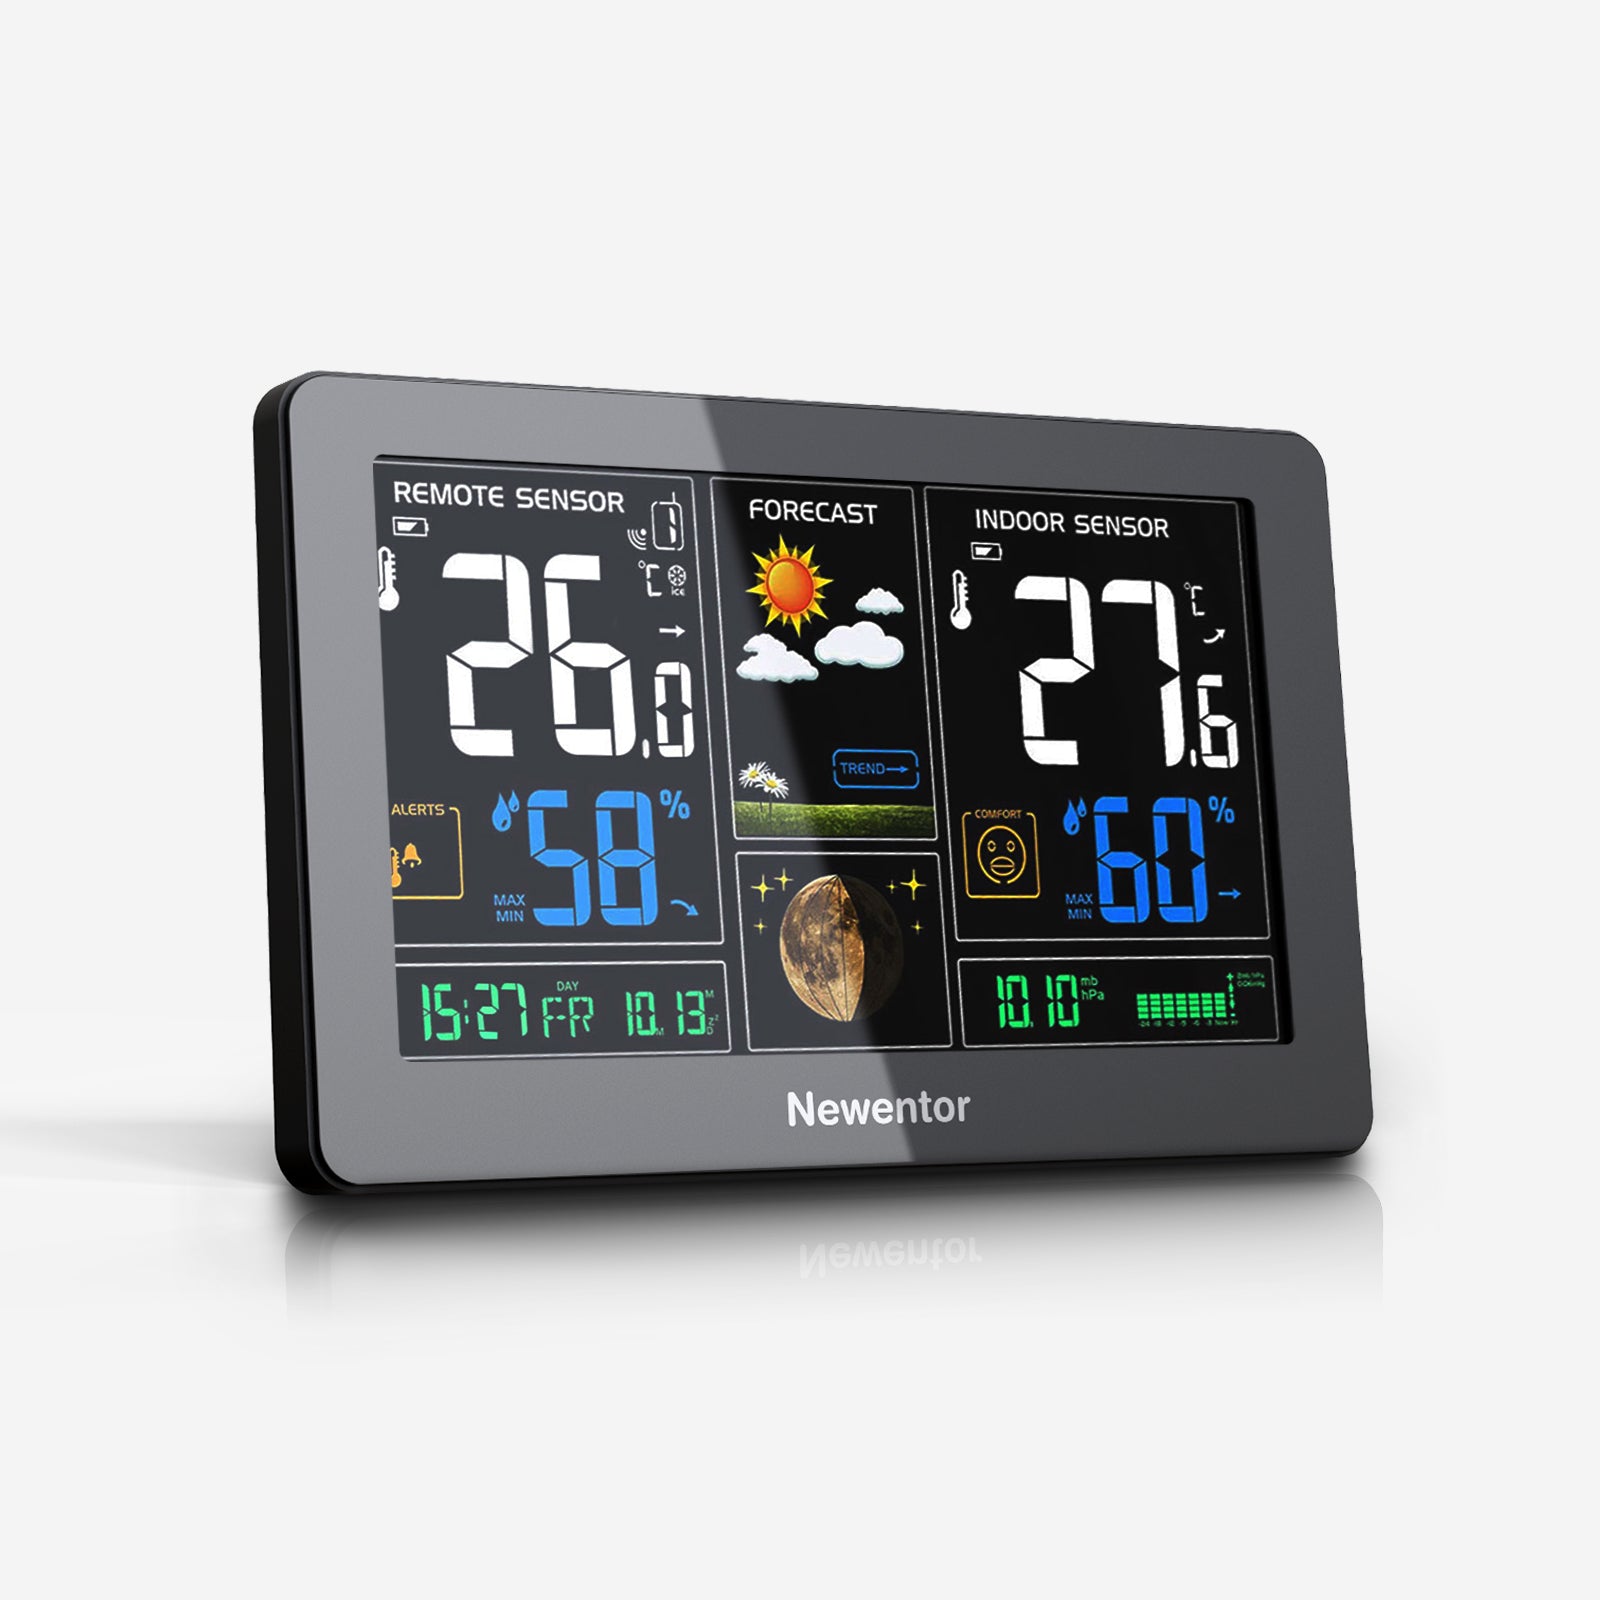 Kabellose Wetterstation mit Außensensor, Digital-Thermometer und